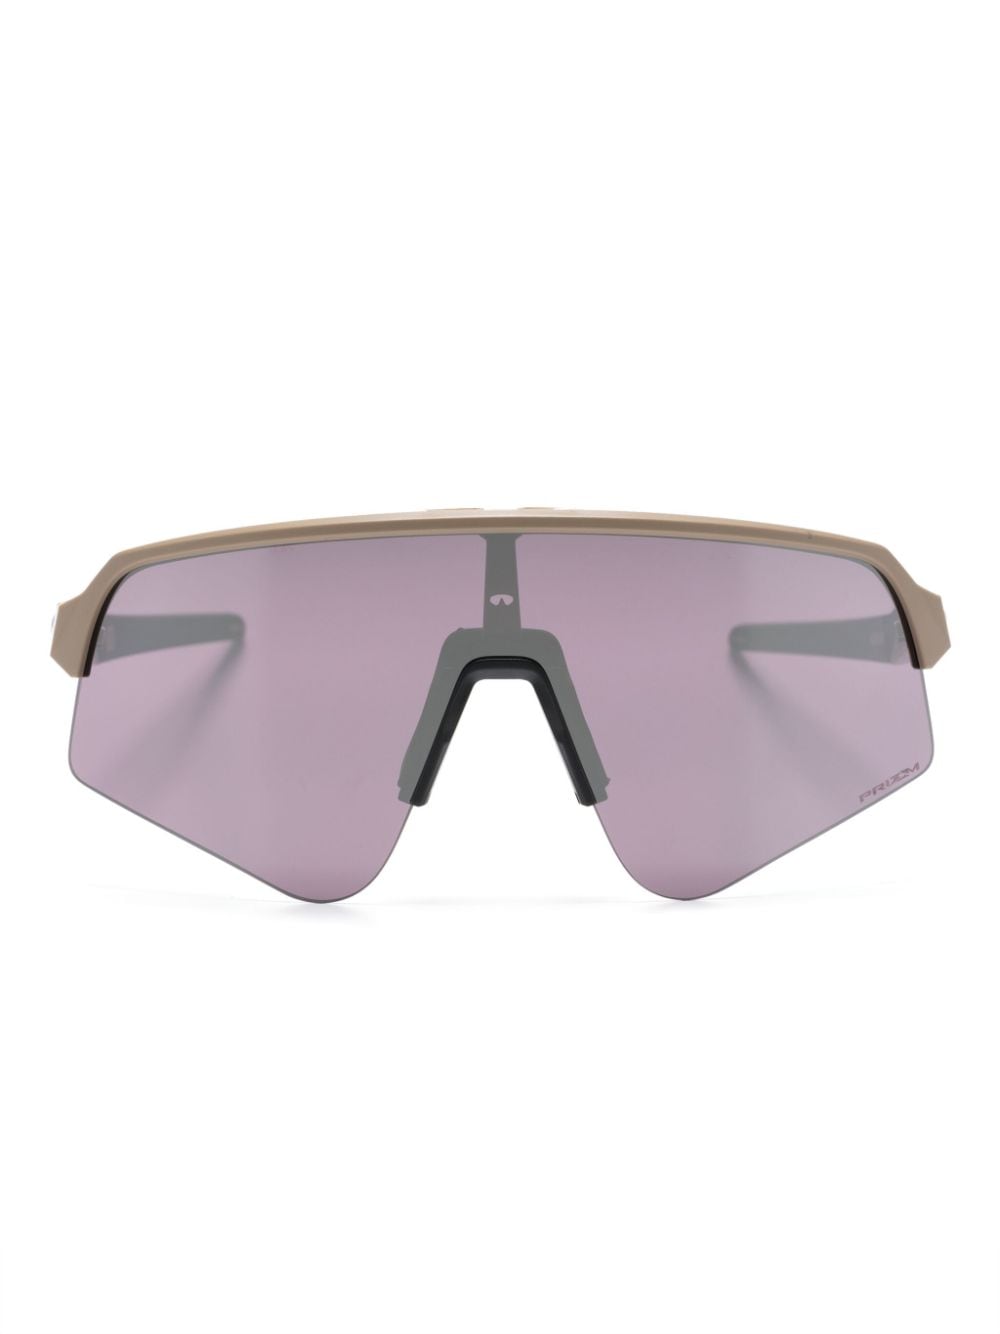 Sutro Lite mirrored sunglasses<BR/><BR/><BR/>